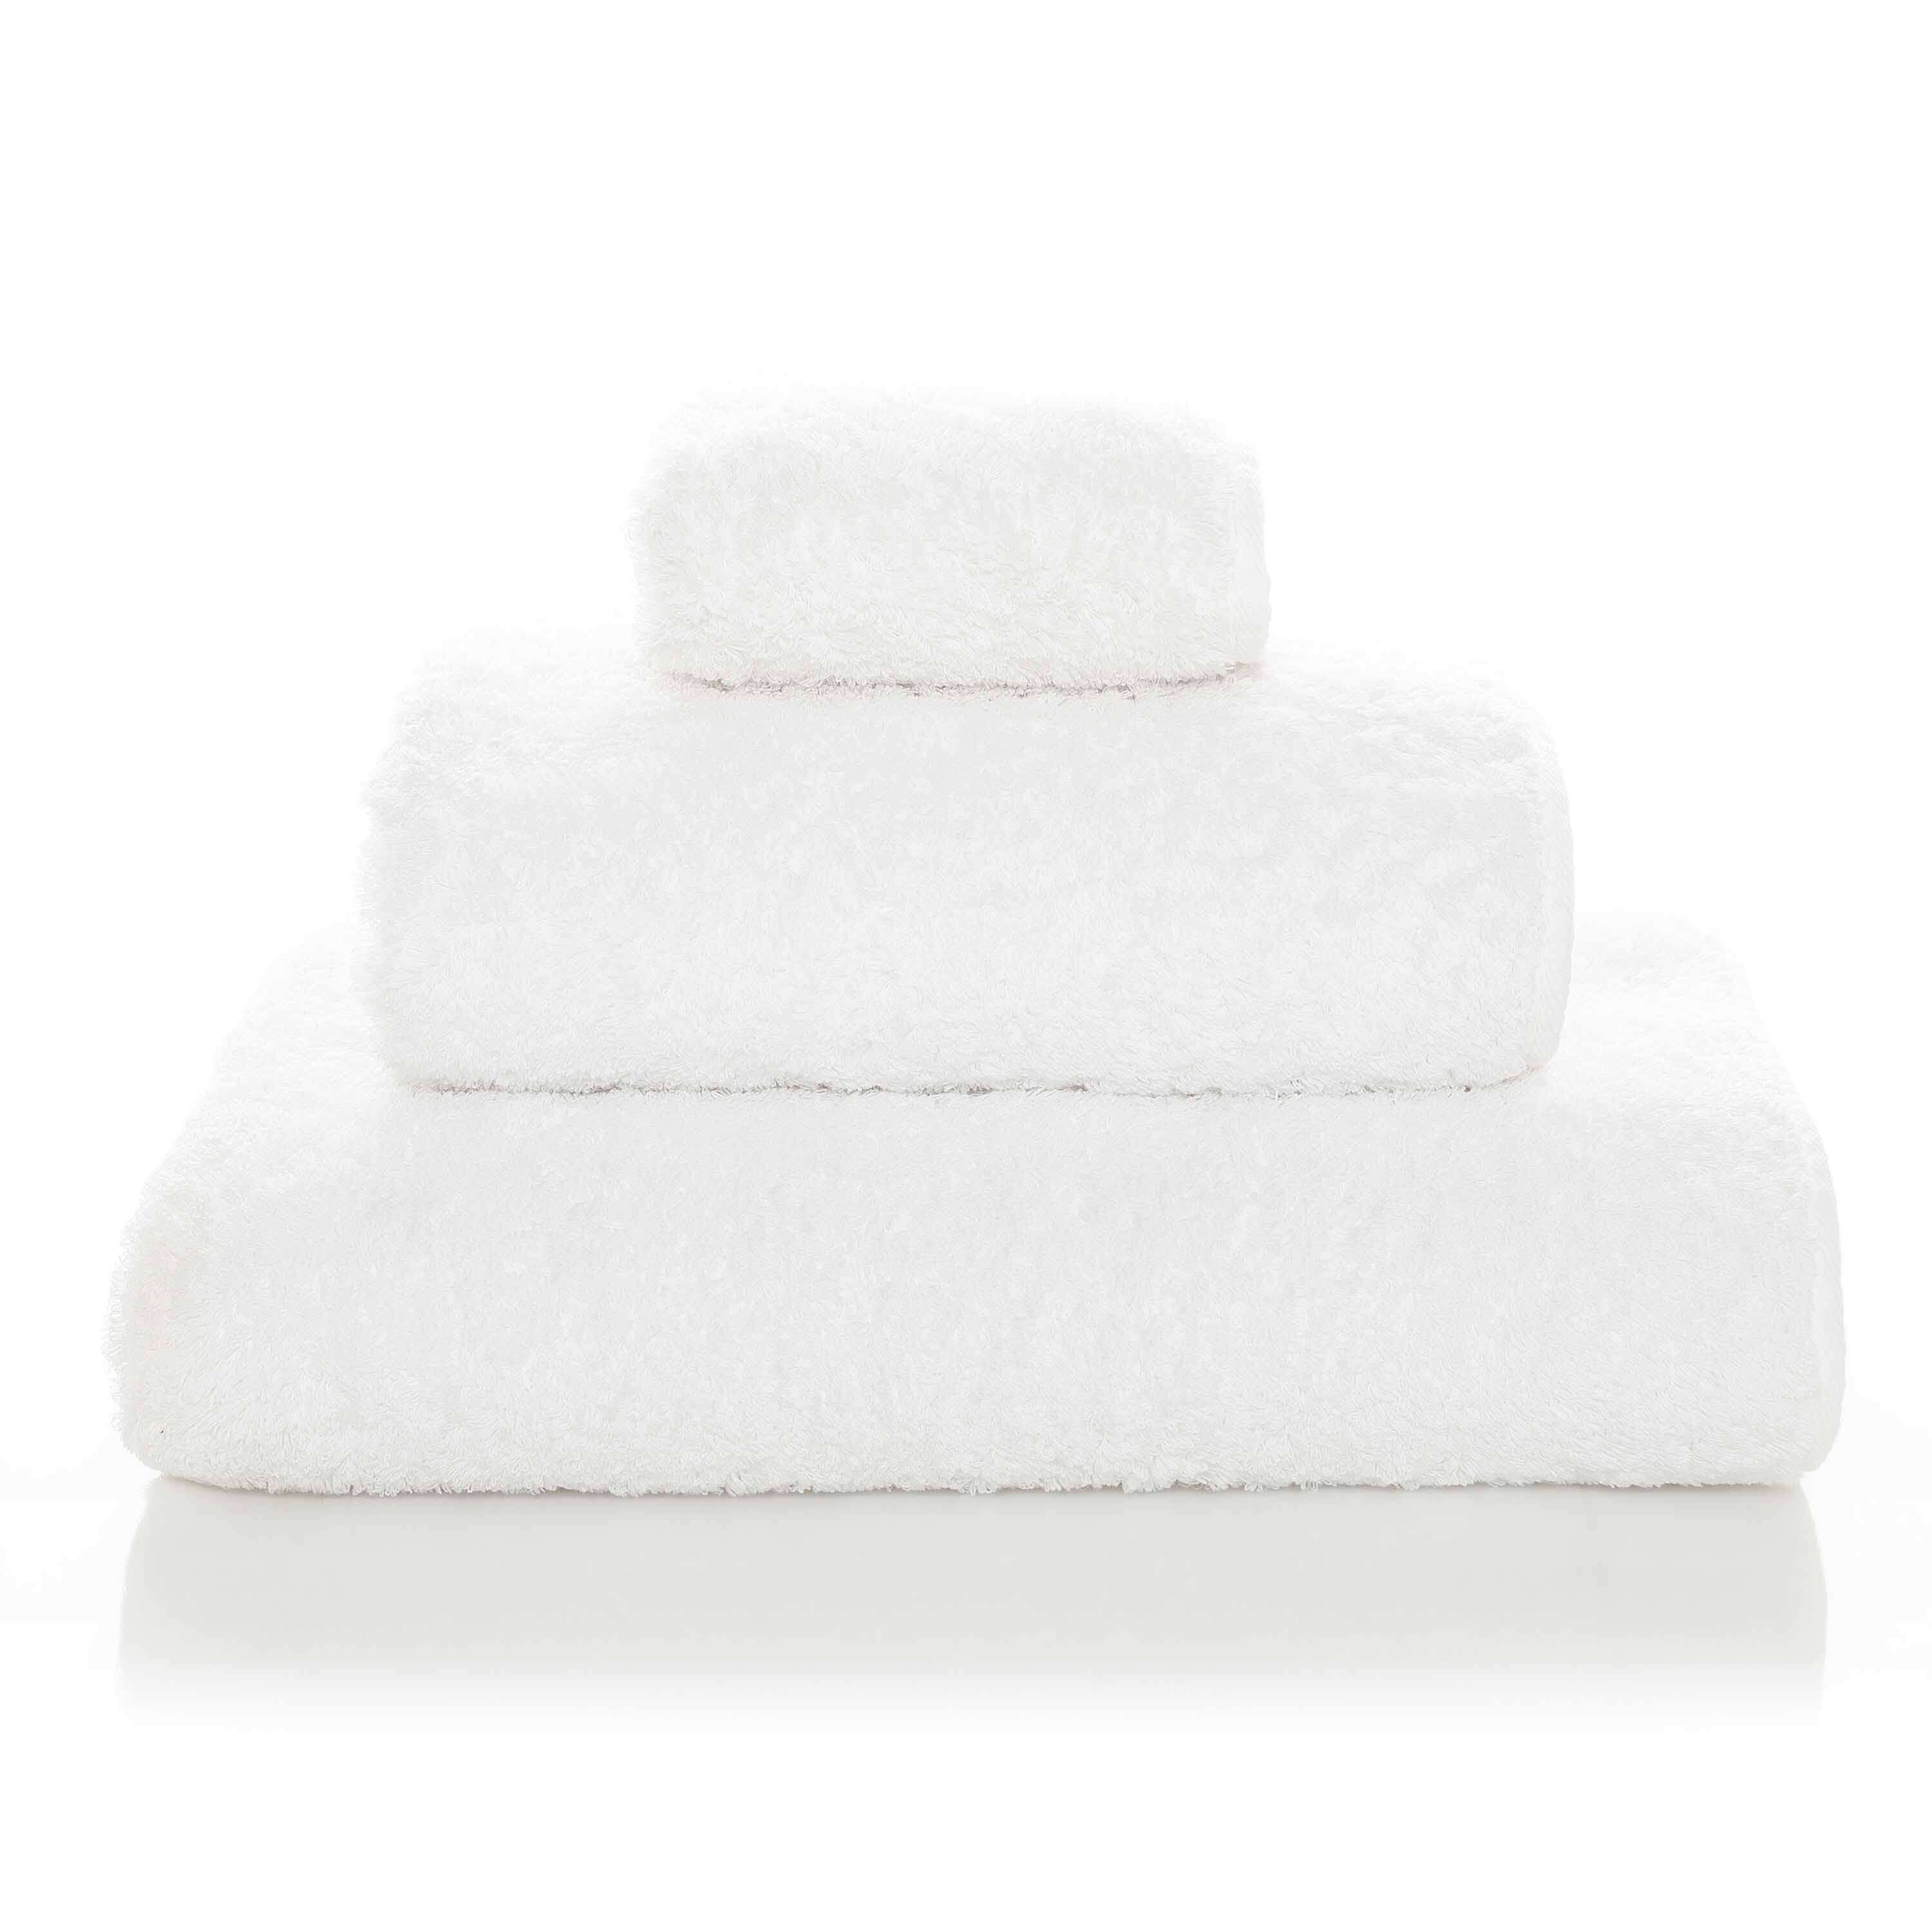 Элитное полотенце Egoist Range White ☞ Размер: 70 x 140 см